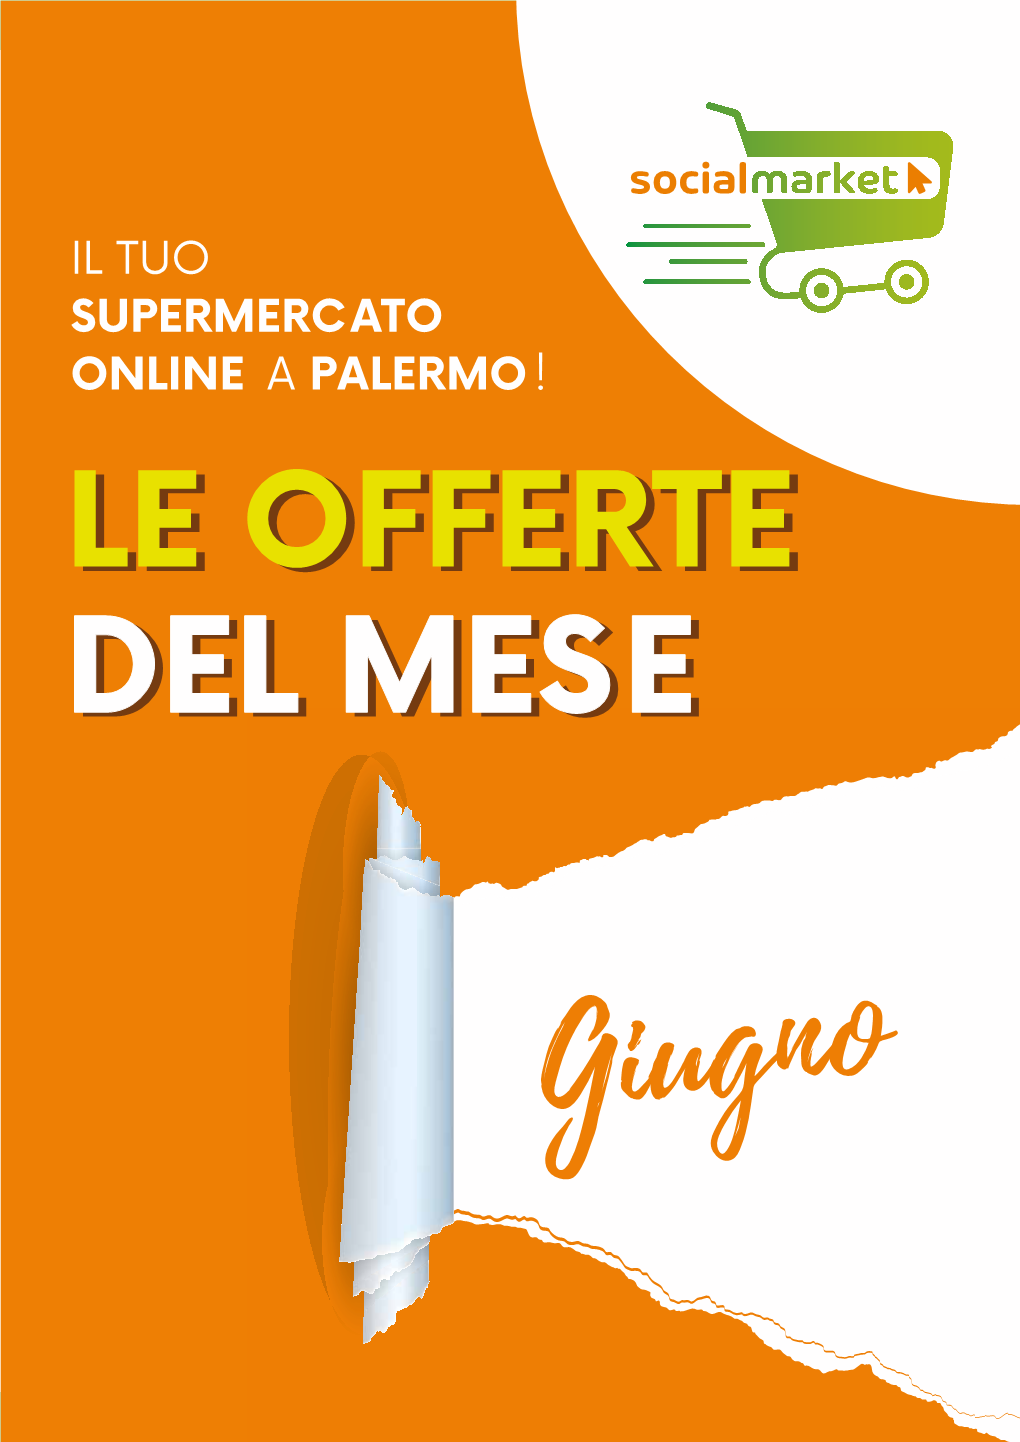 Il Tuo Supermercato Online a Palermo!